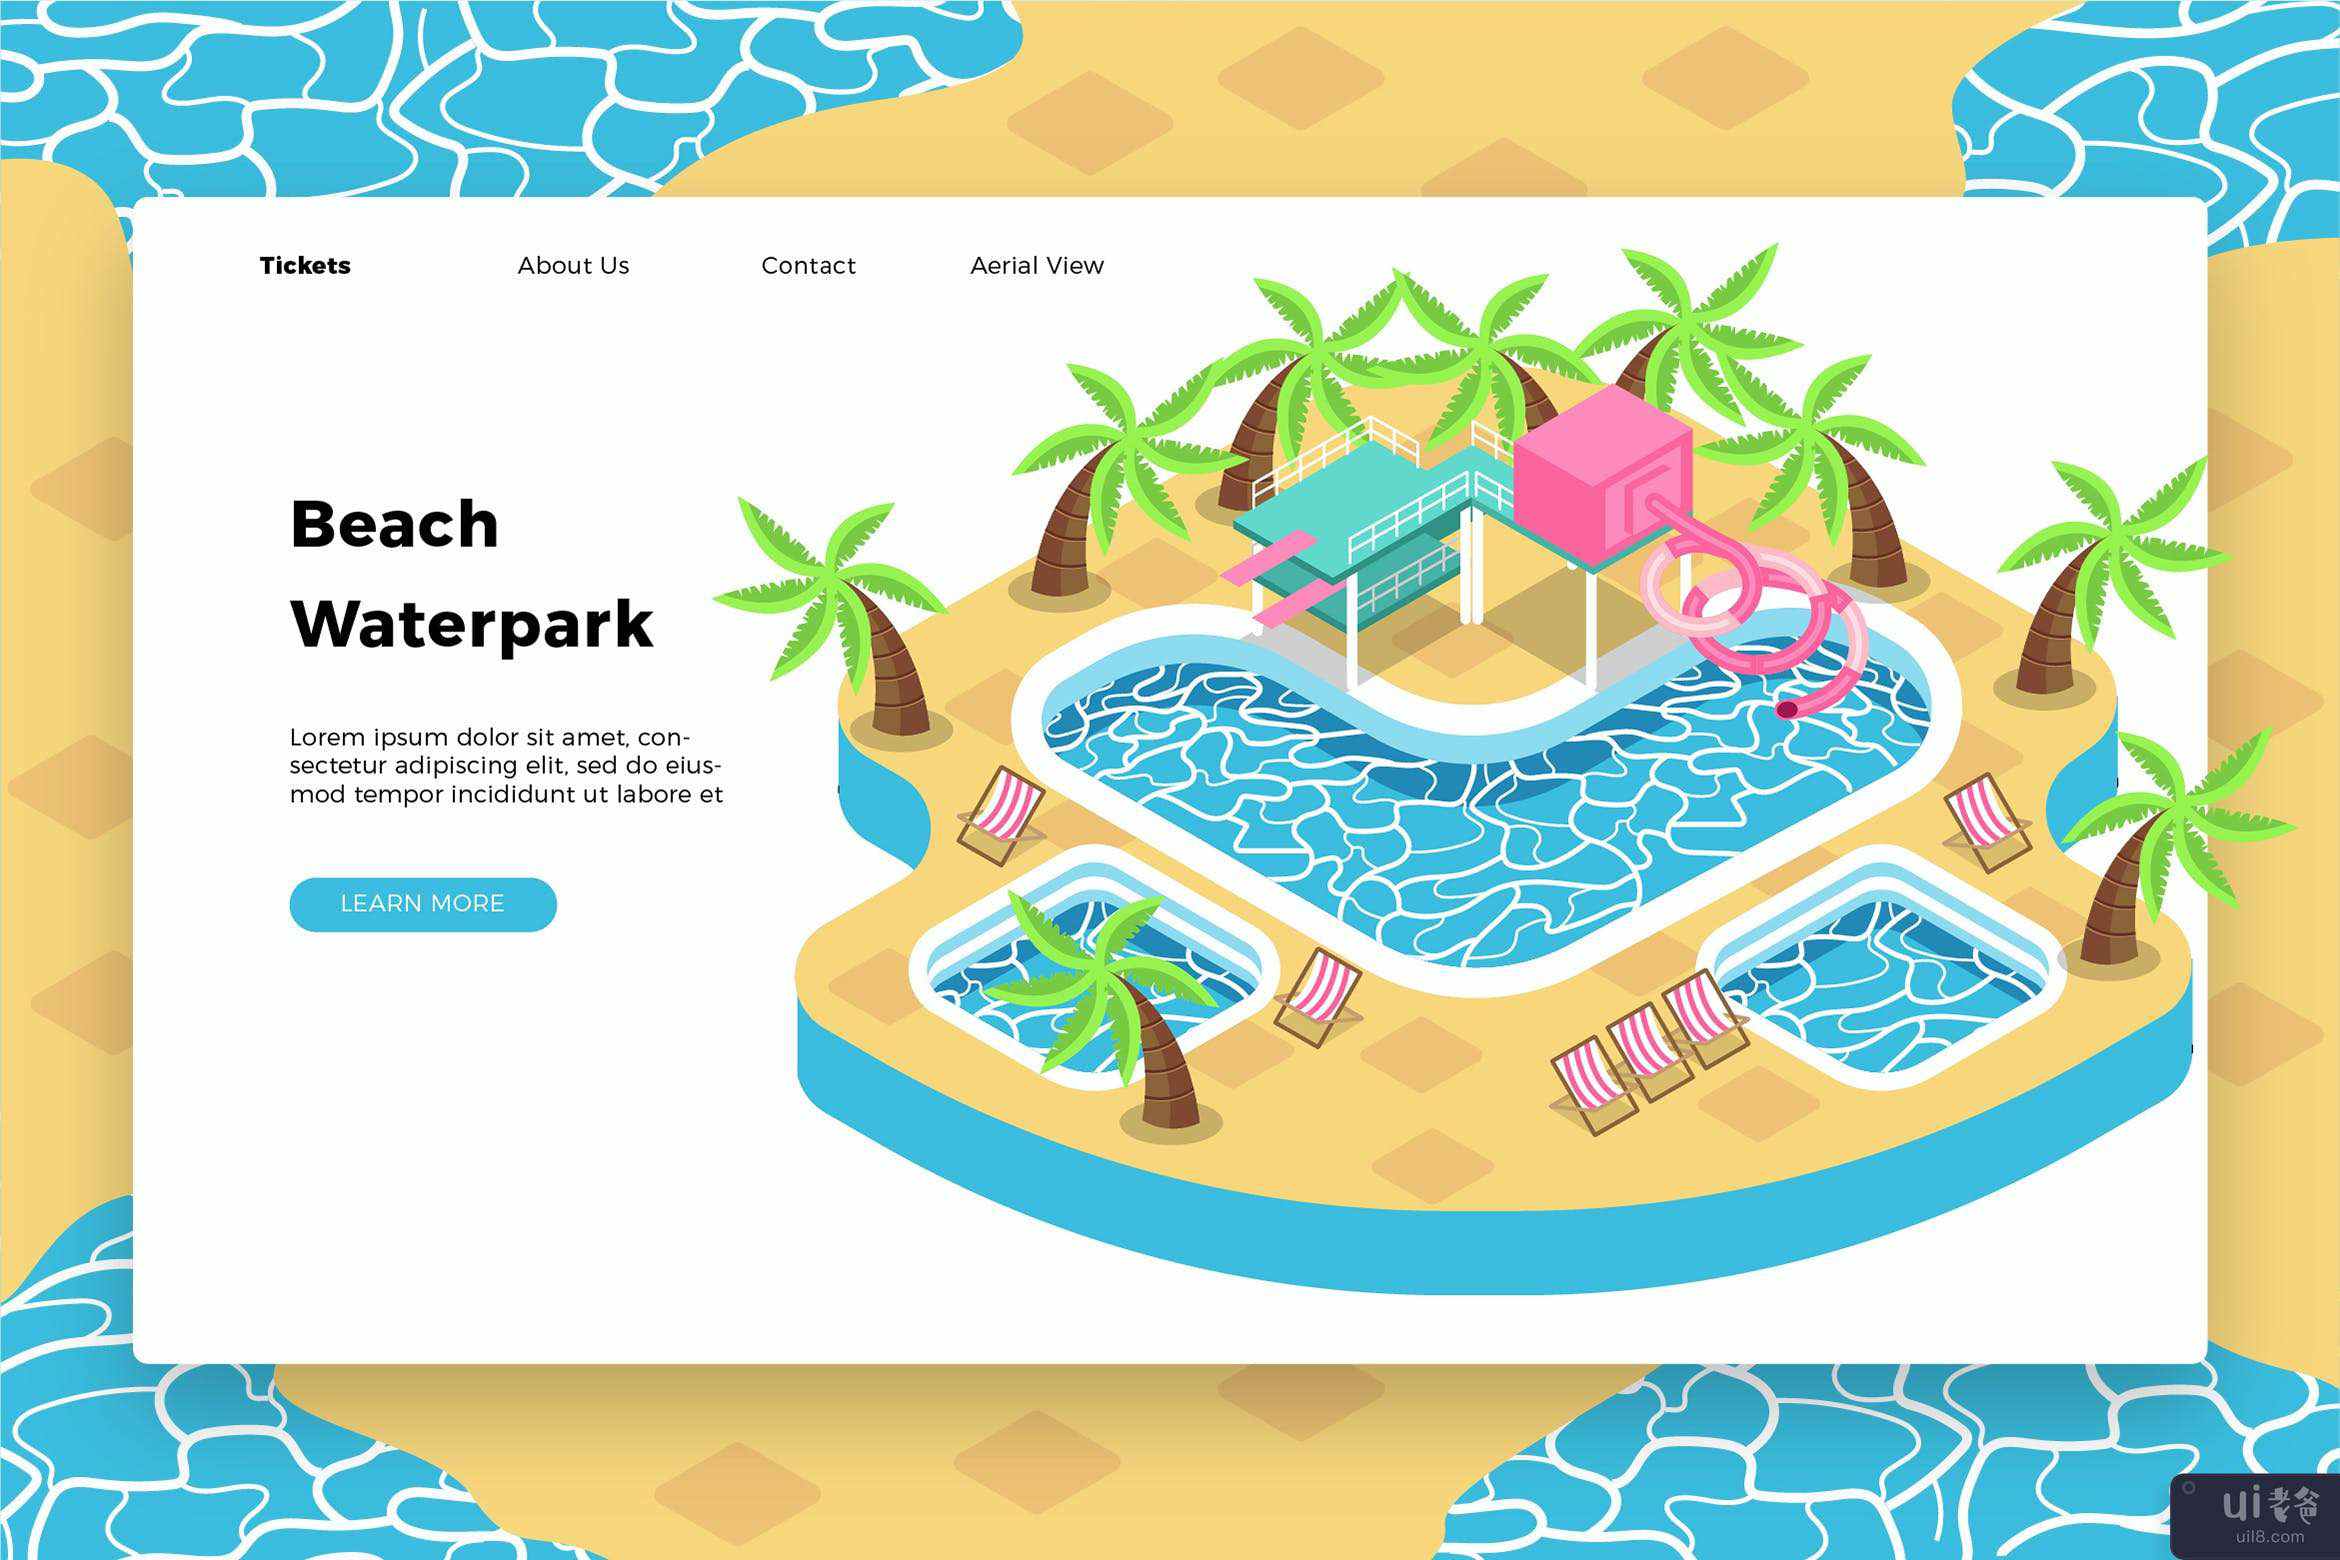 海滩水上乐园 - 横幅和登陆页面(Beach Waterpark - Banner & Landing Page)插图2